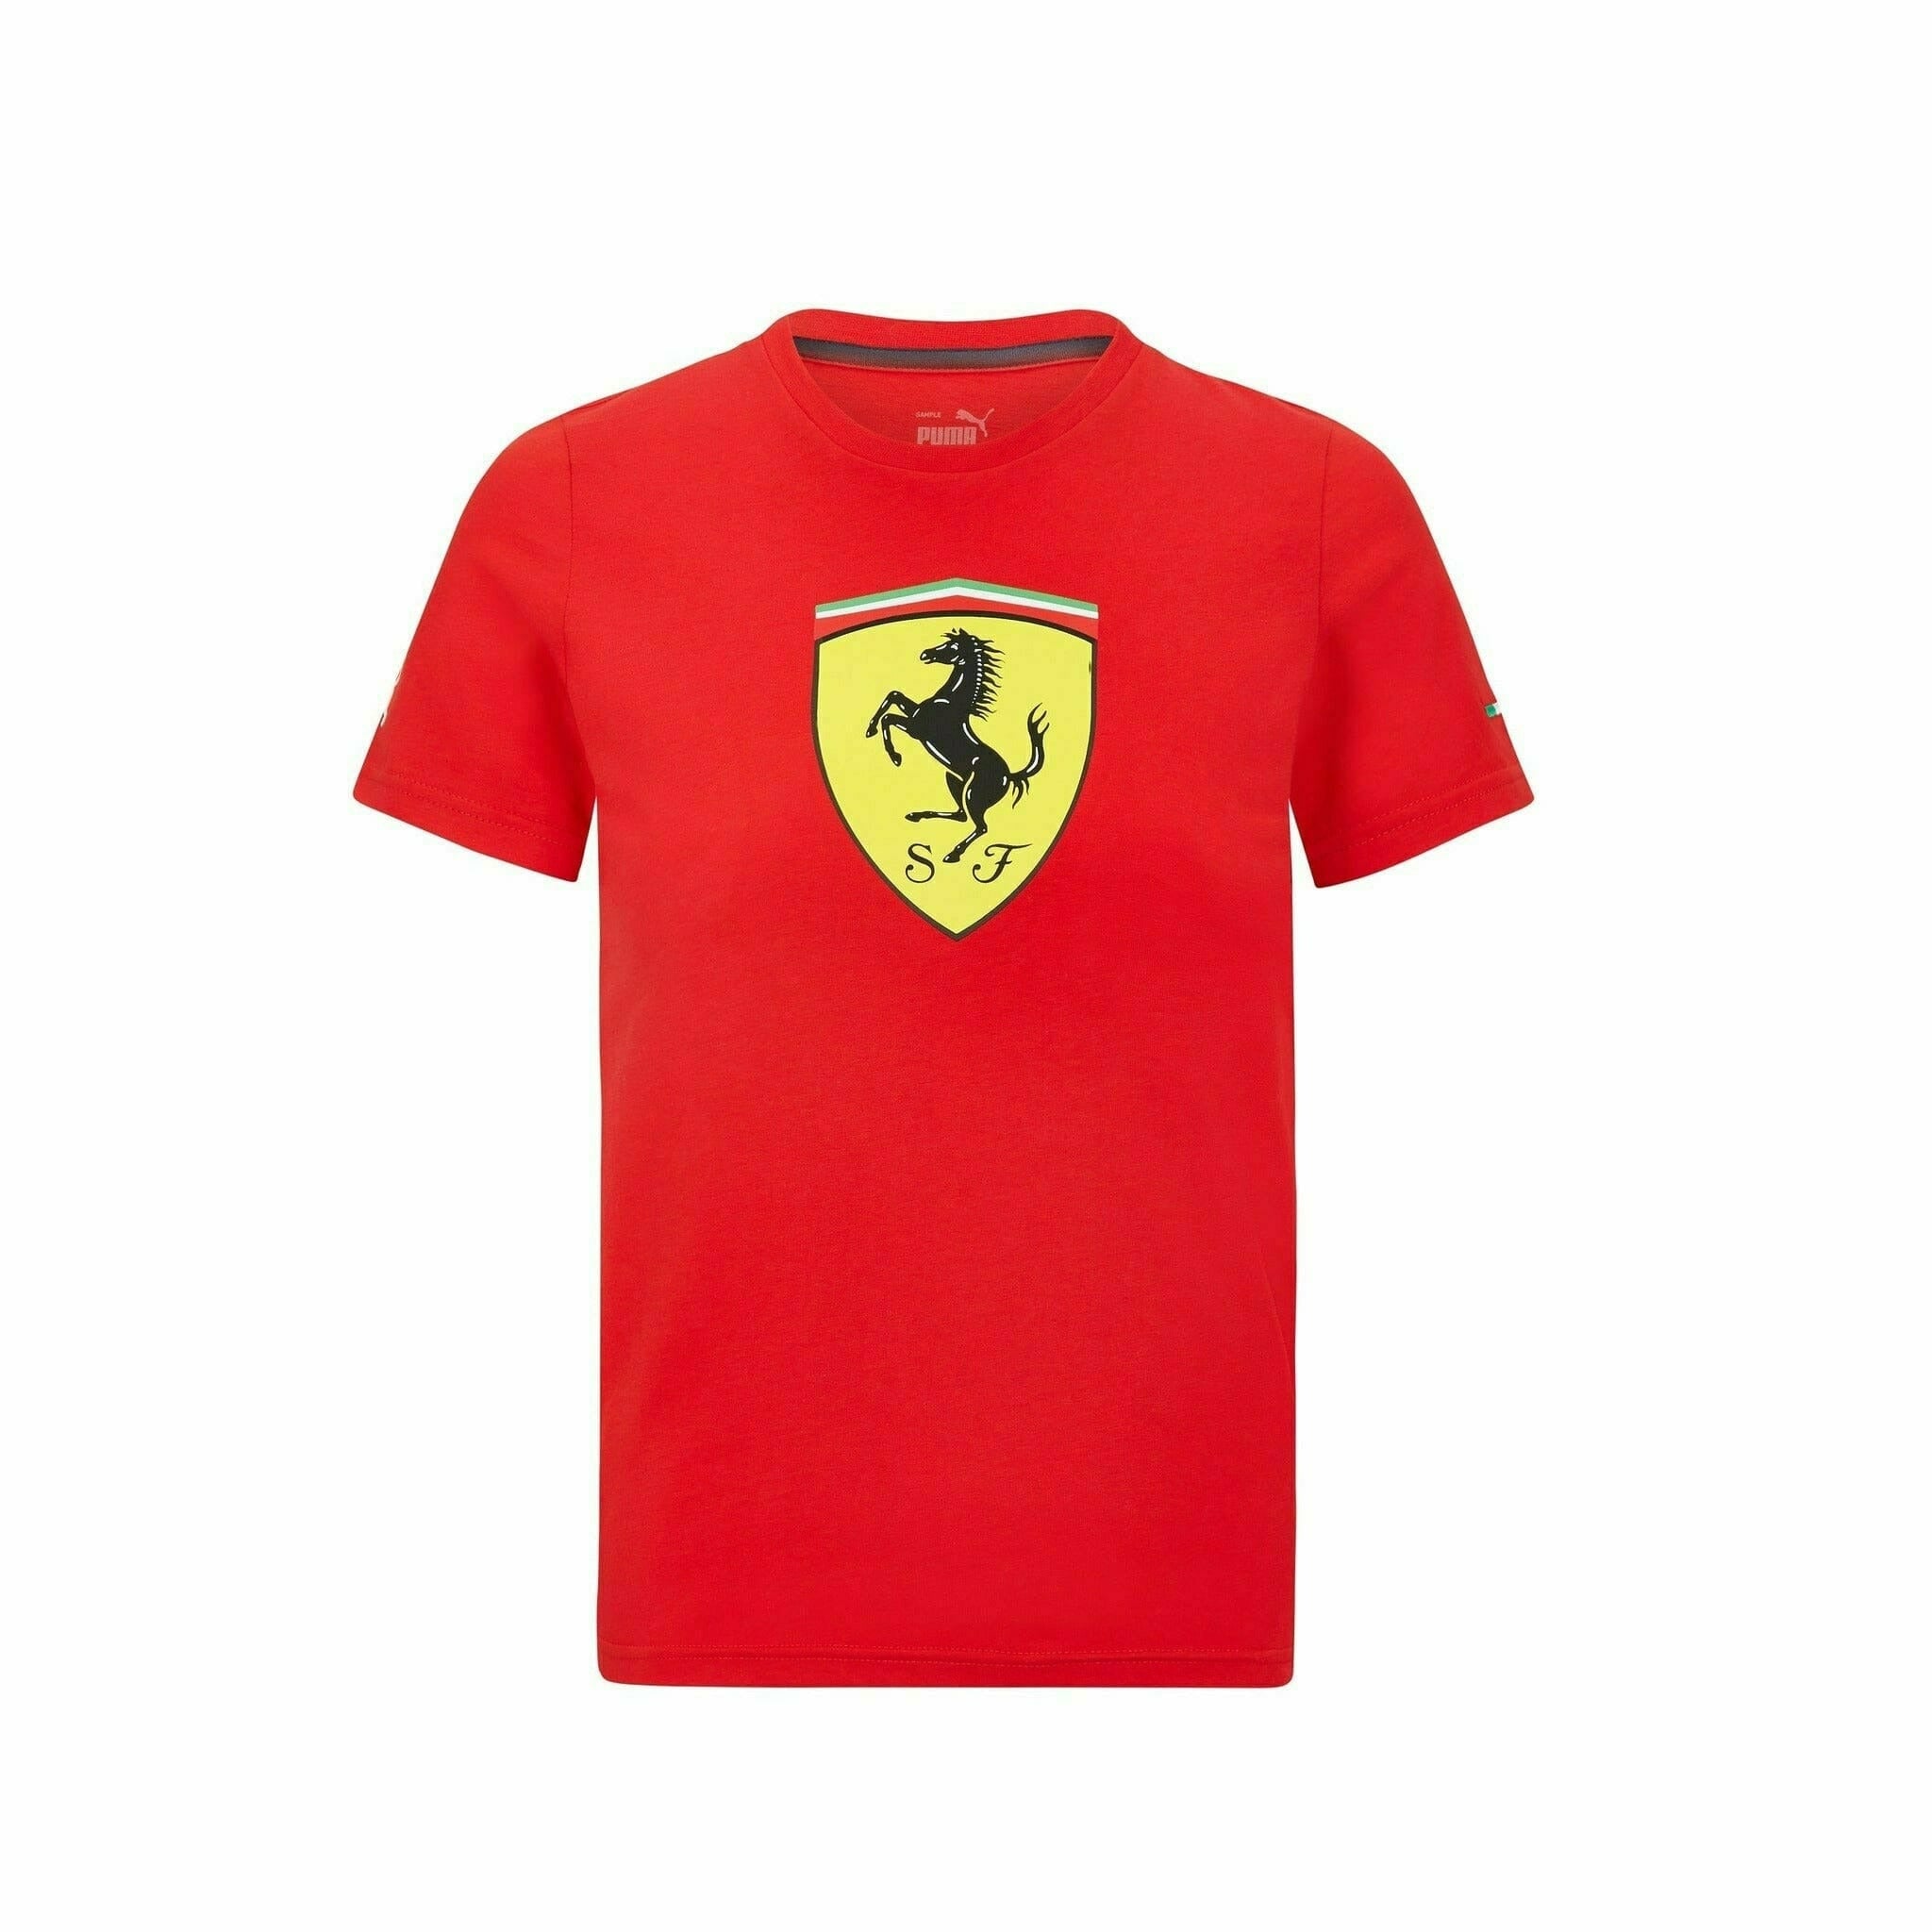 Brun juni Rullesten Scuderia Ferrari Kids Puma Large Shield Logo T-Shirt- Youth Red/Black | eBay